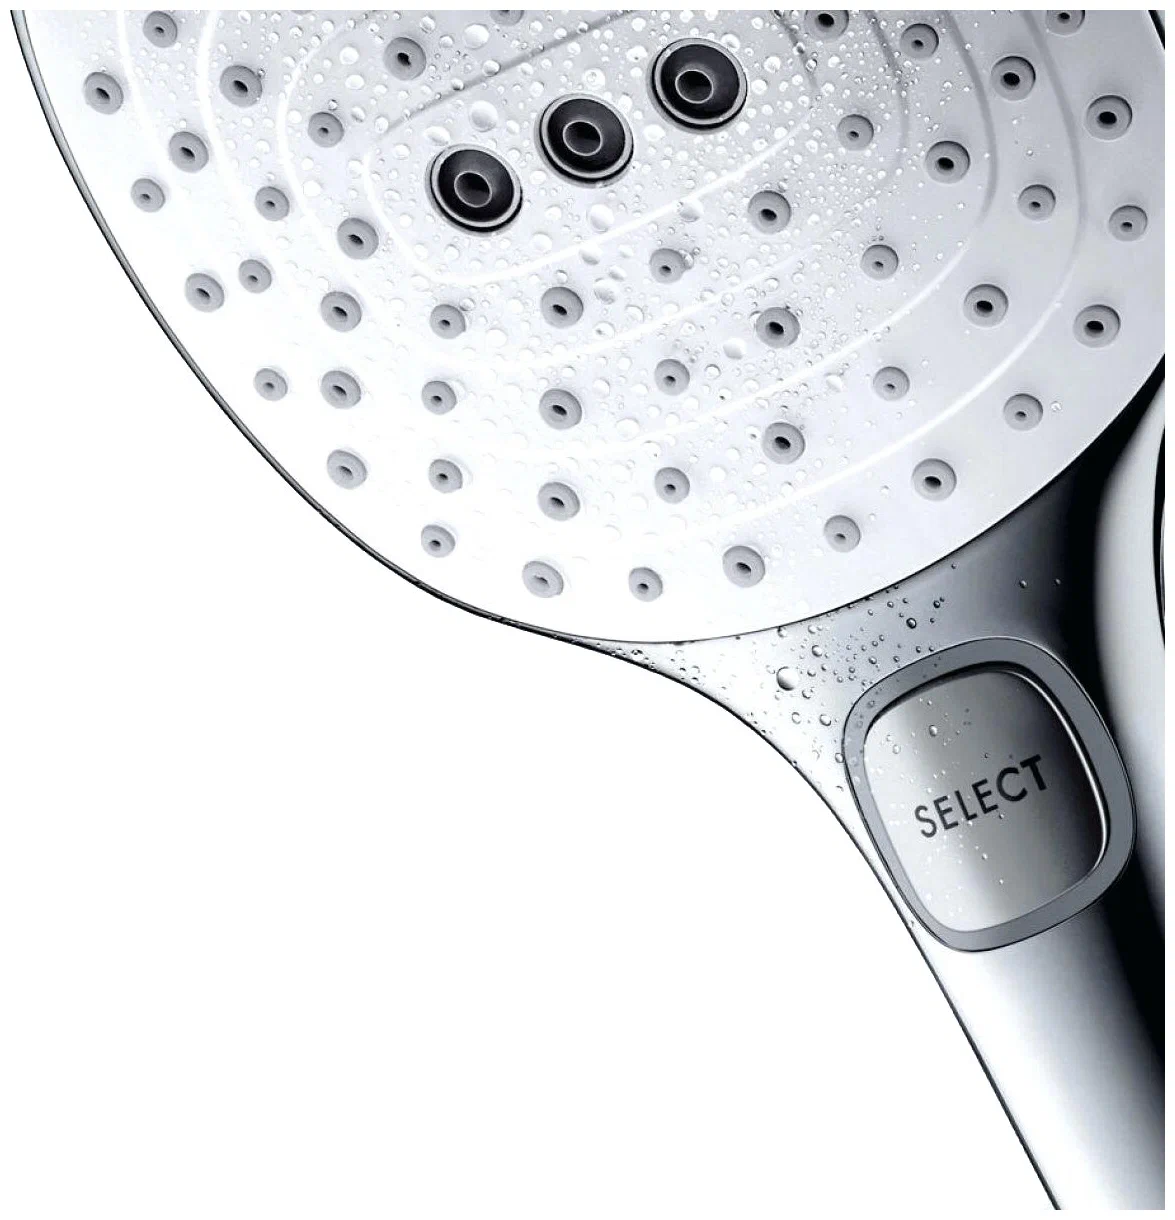 Душевая система с термостатом для ванны, хром Hansgrohe Raindance Select E360 Showerpipe 27113400